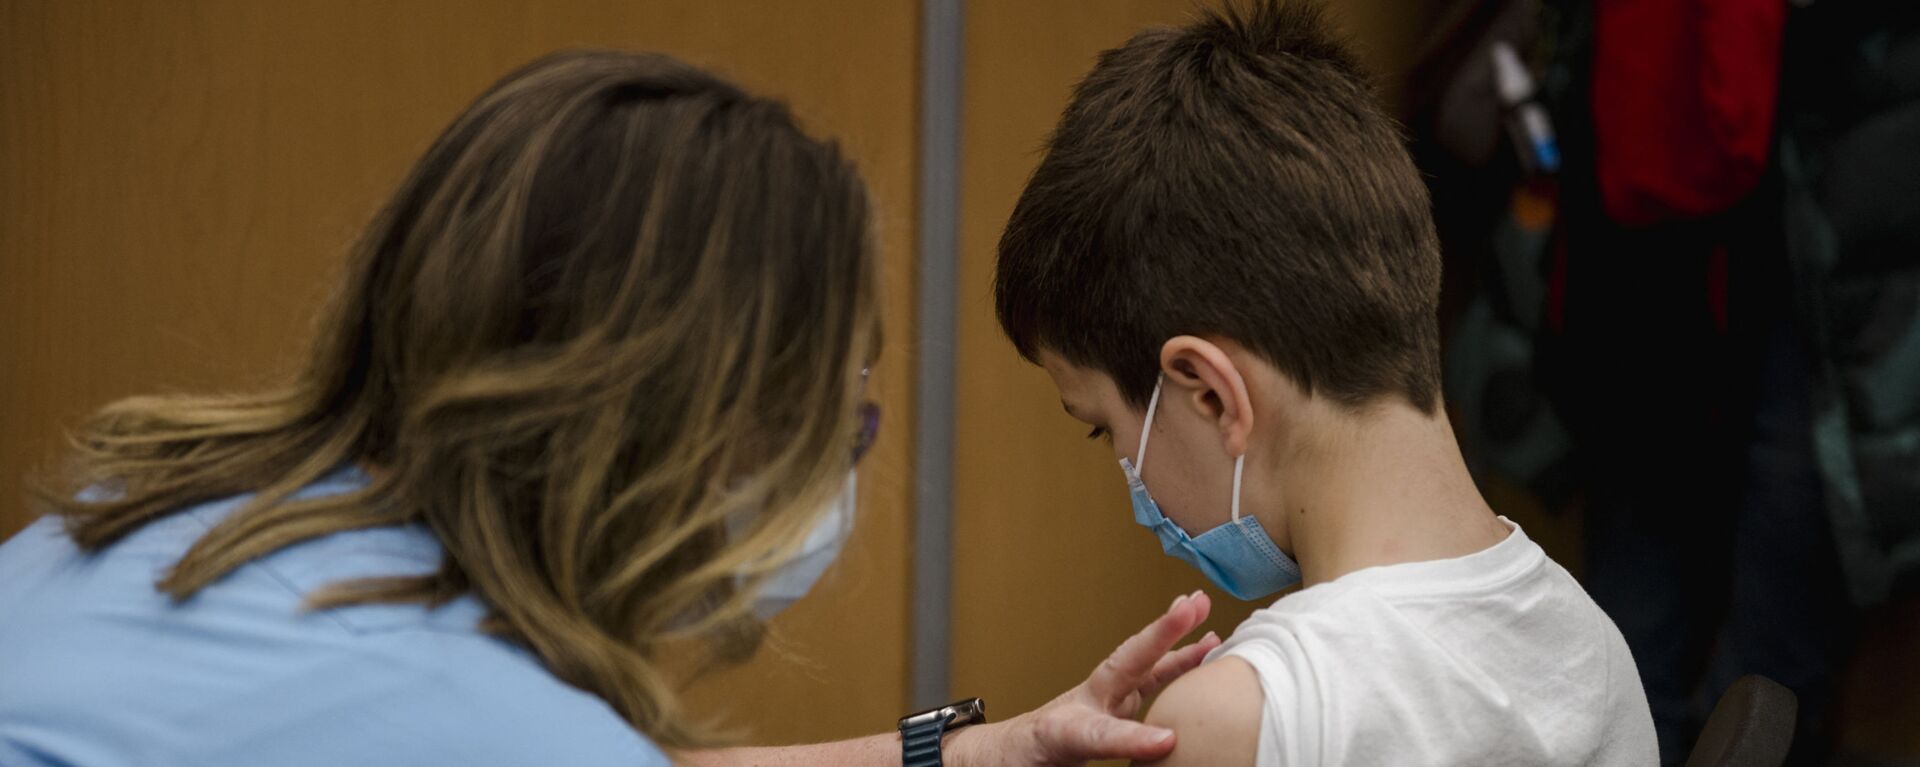 Ребенок получает вакцину Pfizer-BioNTech Covid-19 для детей в Монреале, Квебе - Sputnik Латвия, 1920, 15.12.2021